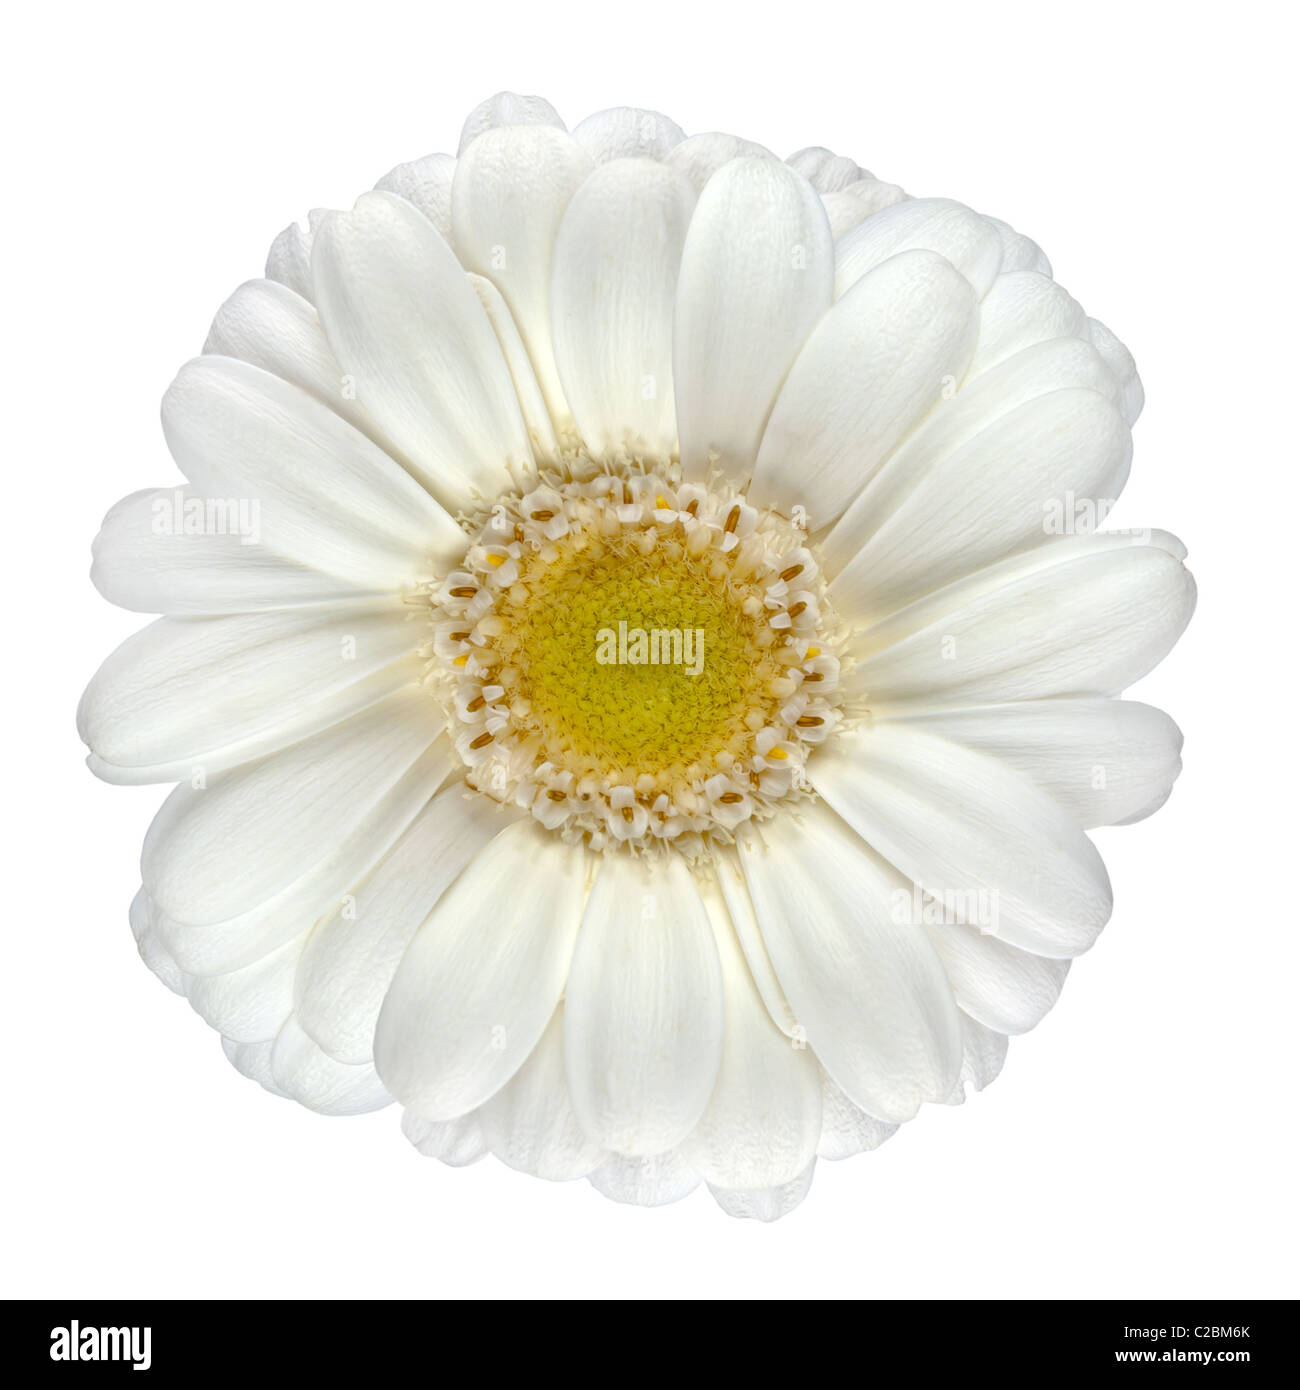 Perfekte weiße Gerbera Blume mit gelben Zentrum Makro Nahaufnahme, Isolated on White Background Stockfoto